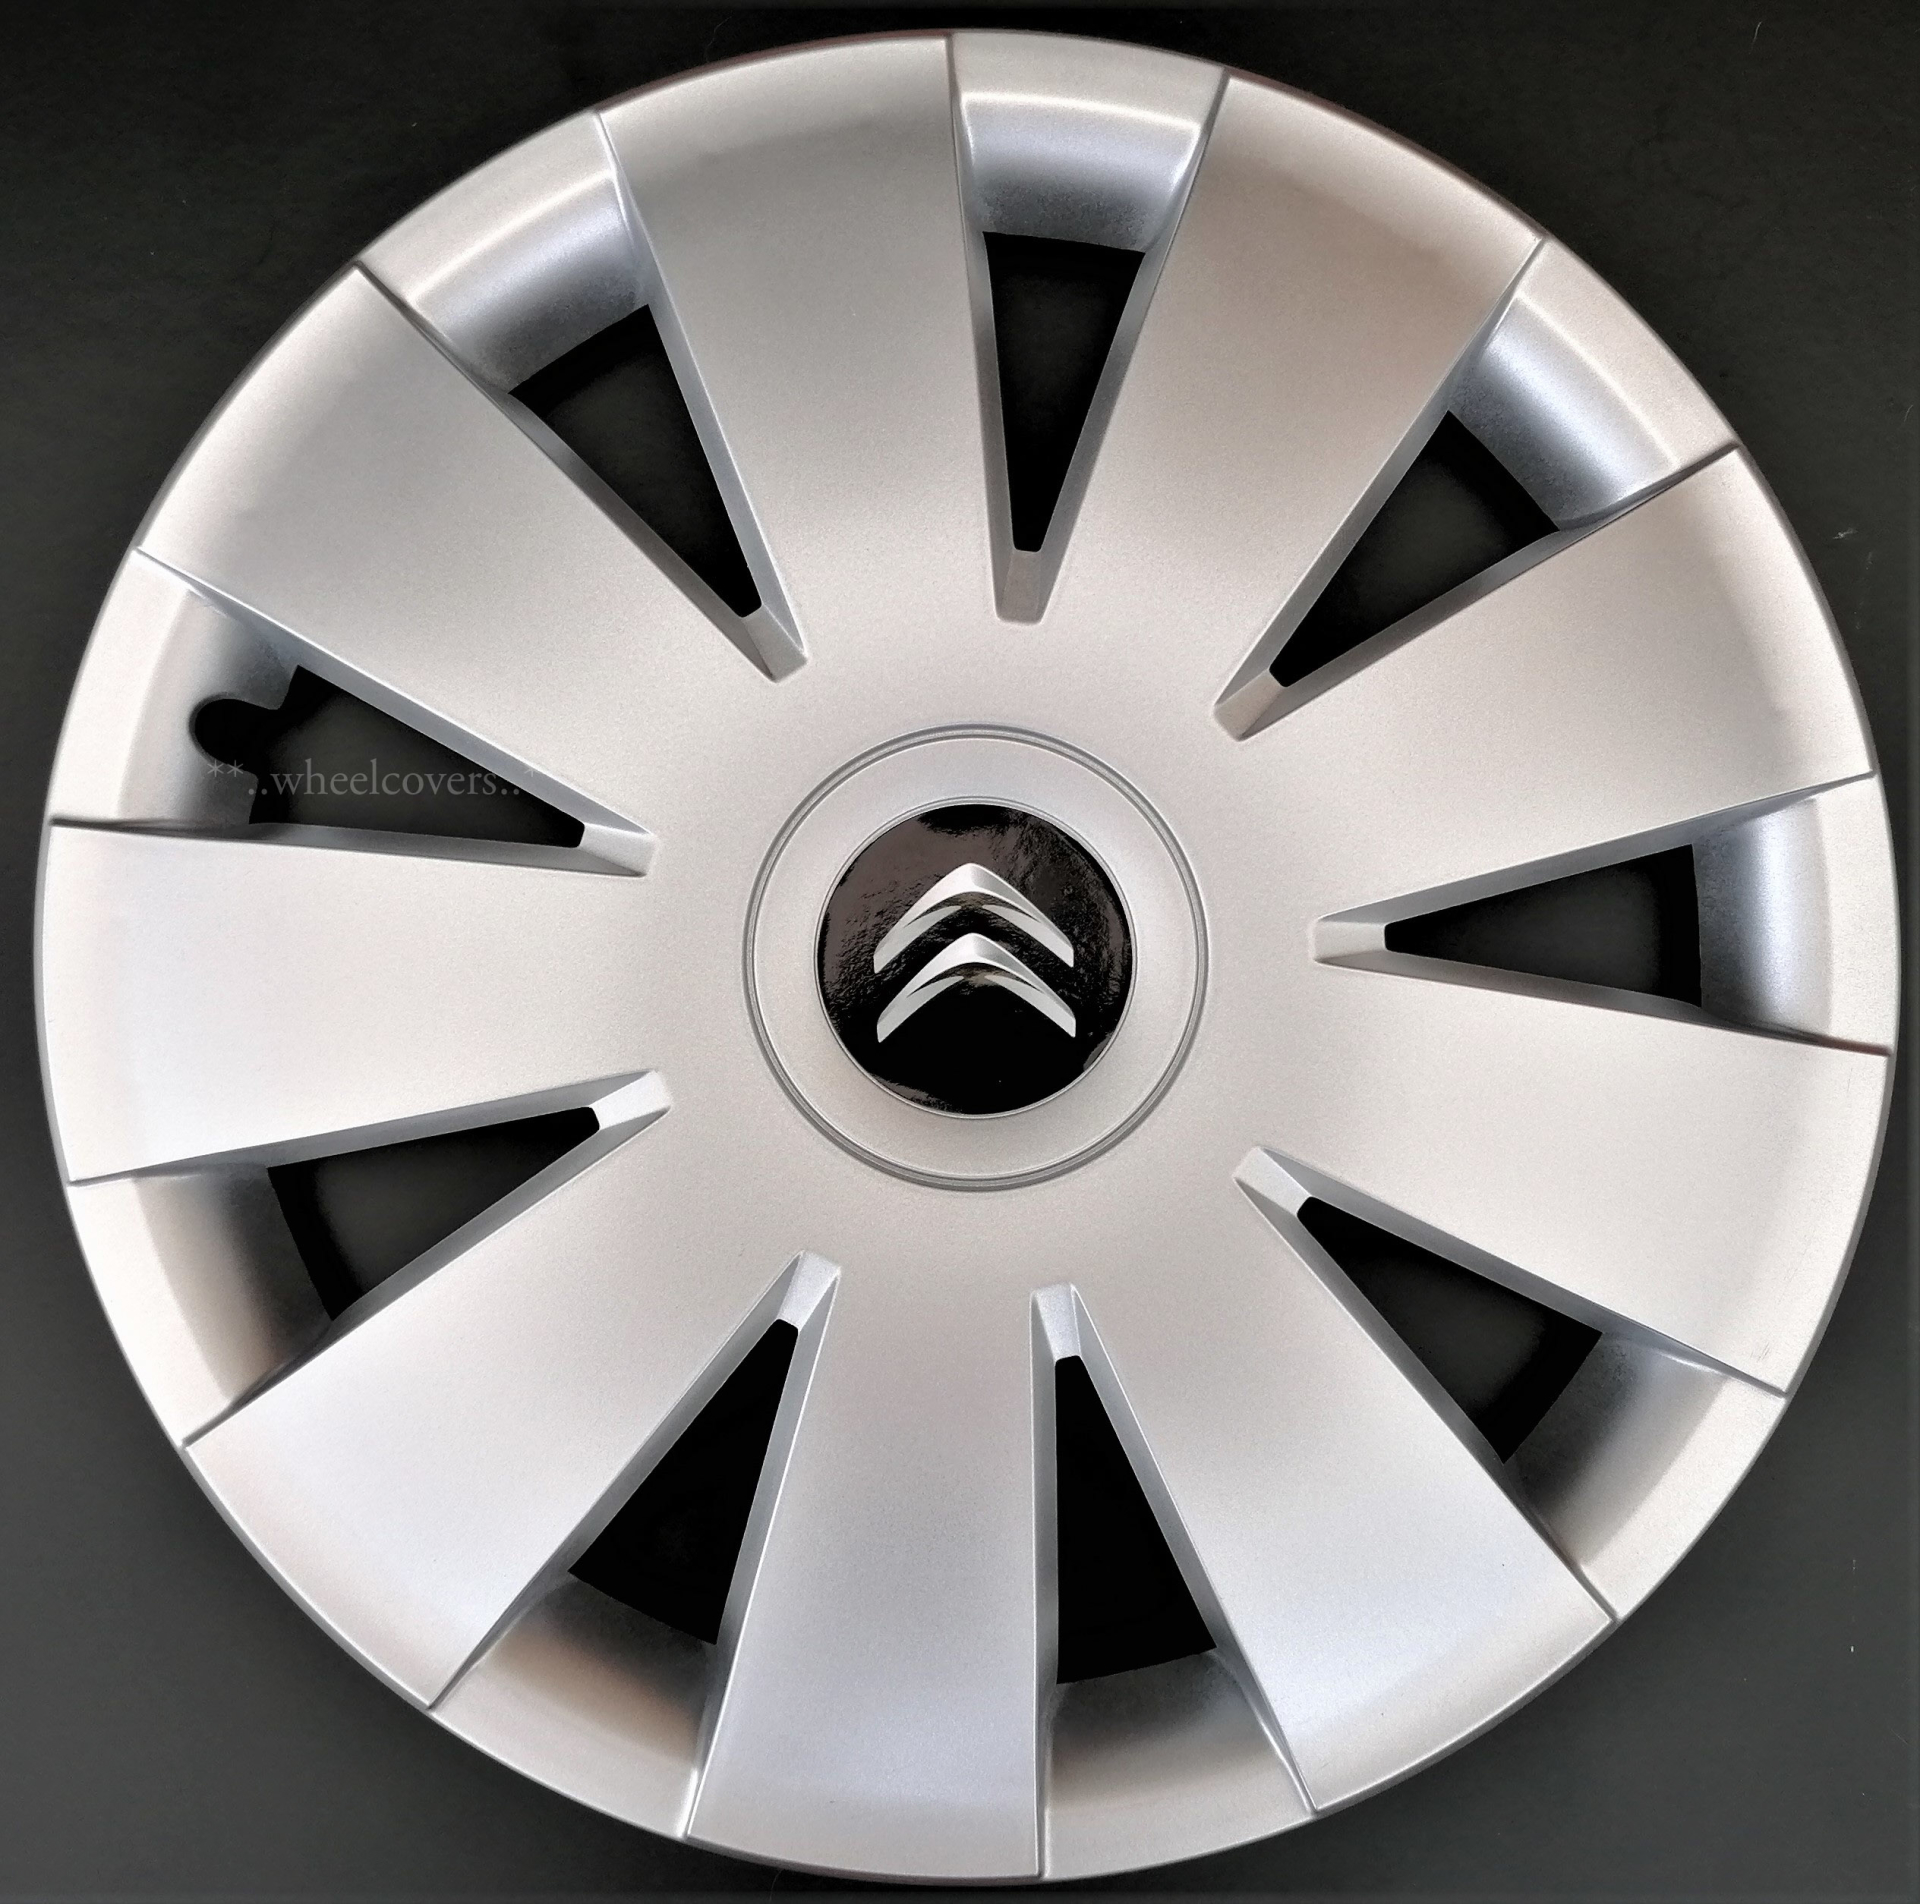 Set of 4x16 inch Wheel Trims to fit Citroen Xsara Picasso C4 C5 C8 ...